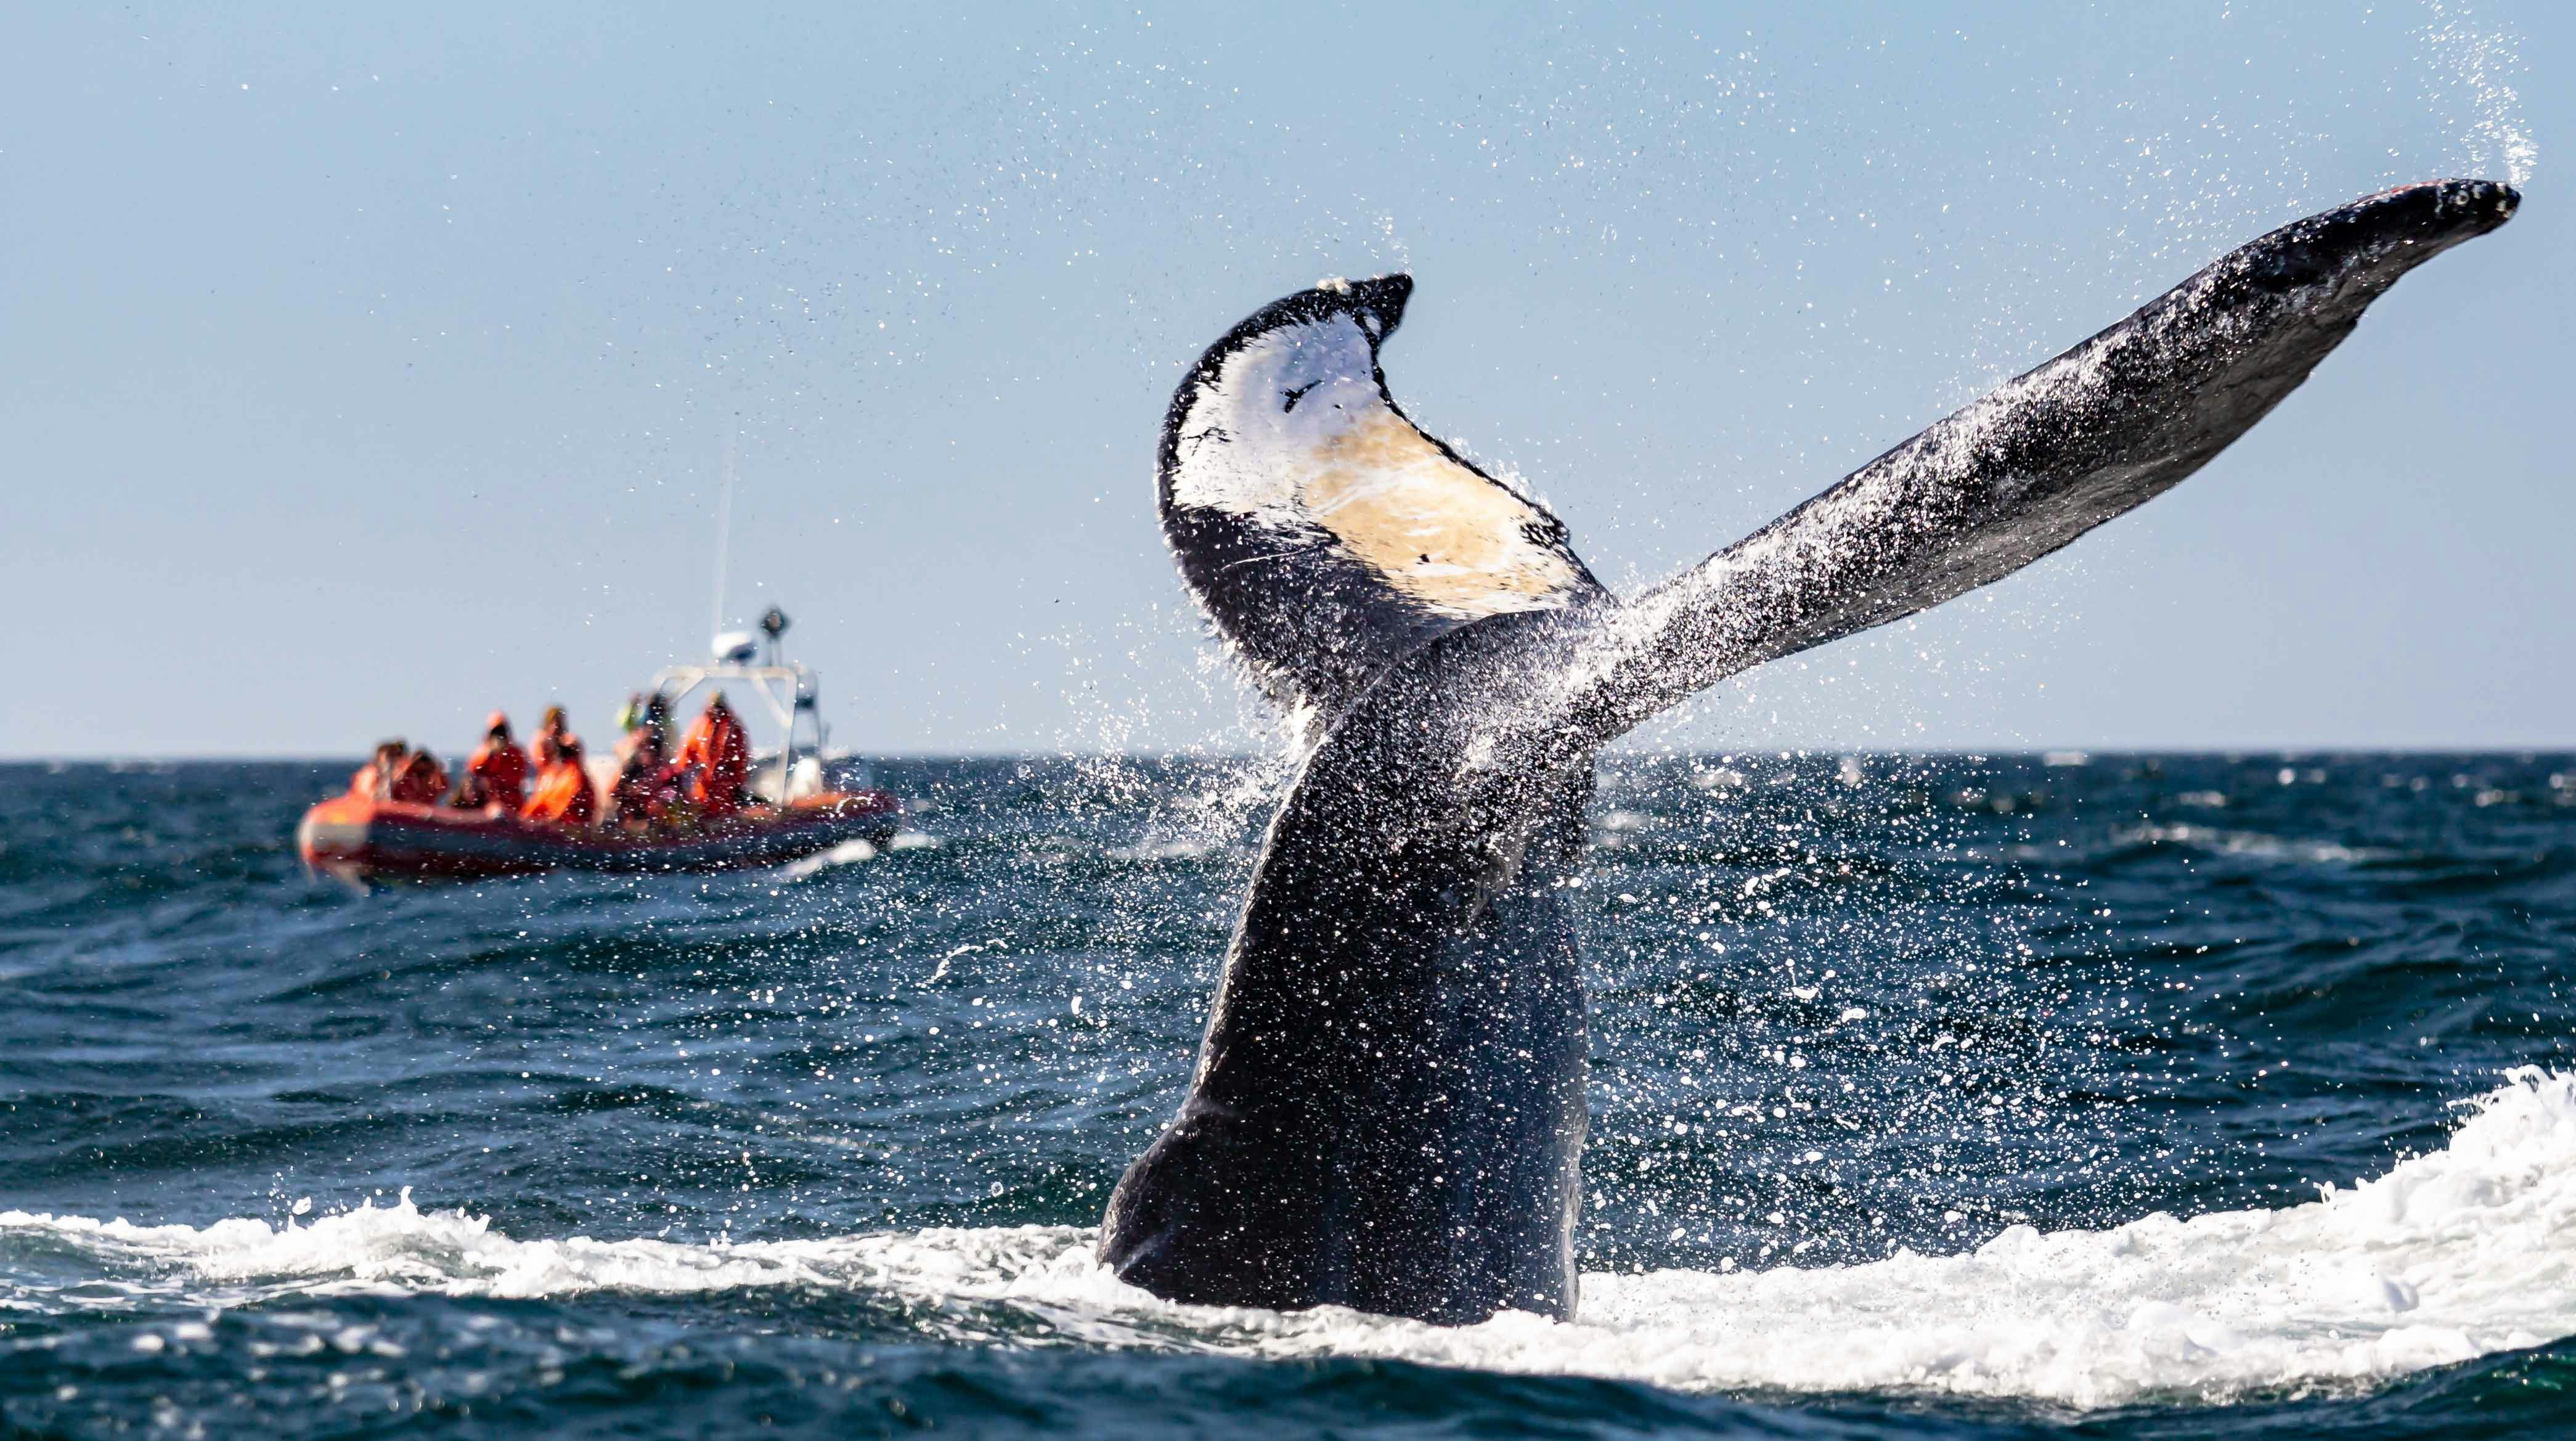 Pessoas observam a cauda de uma baleia em um barco na costa da Ilha Brier, Nova Escócia, Canadá